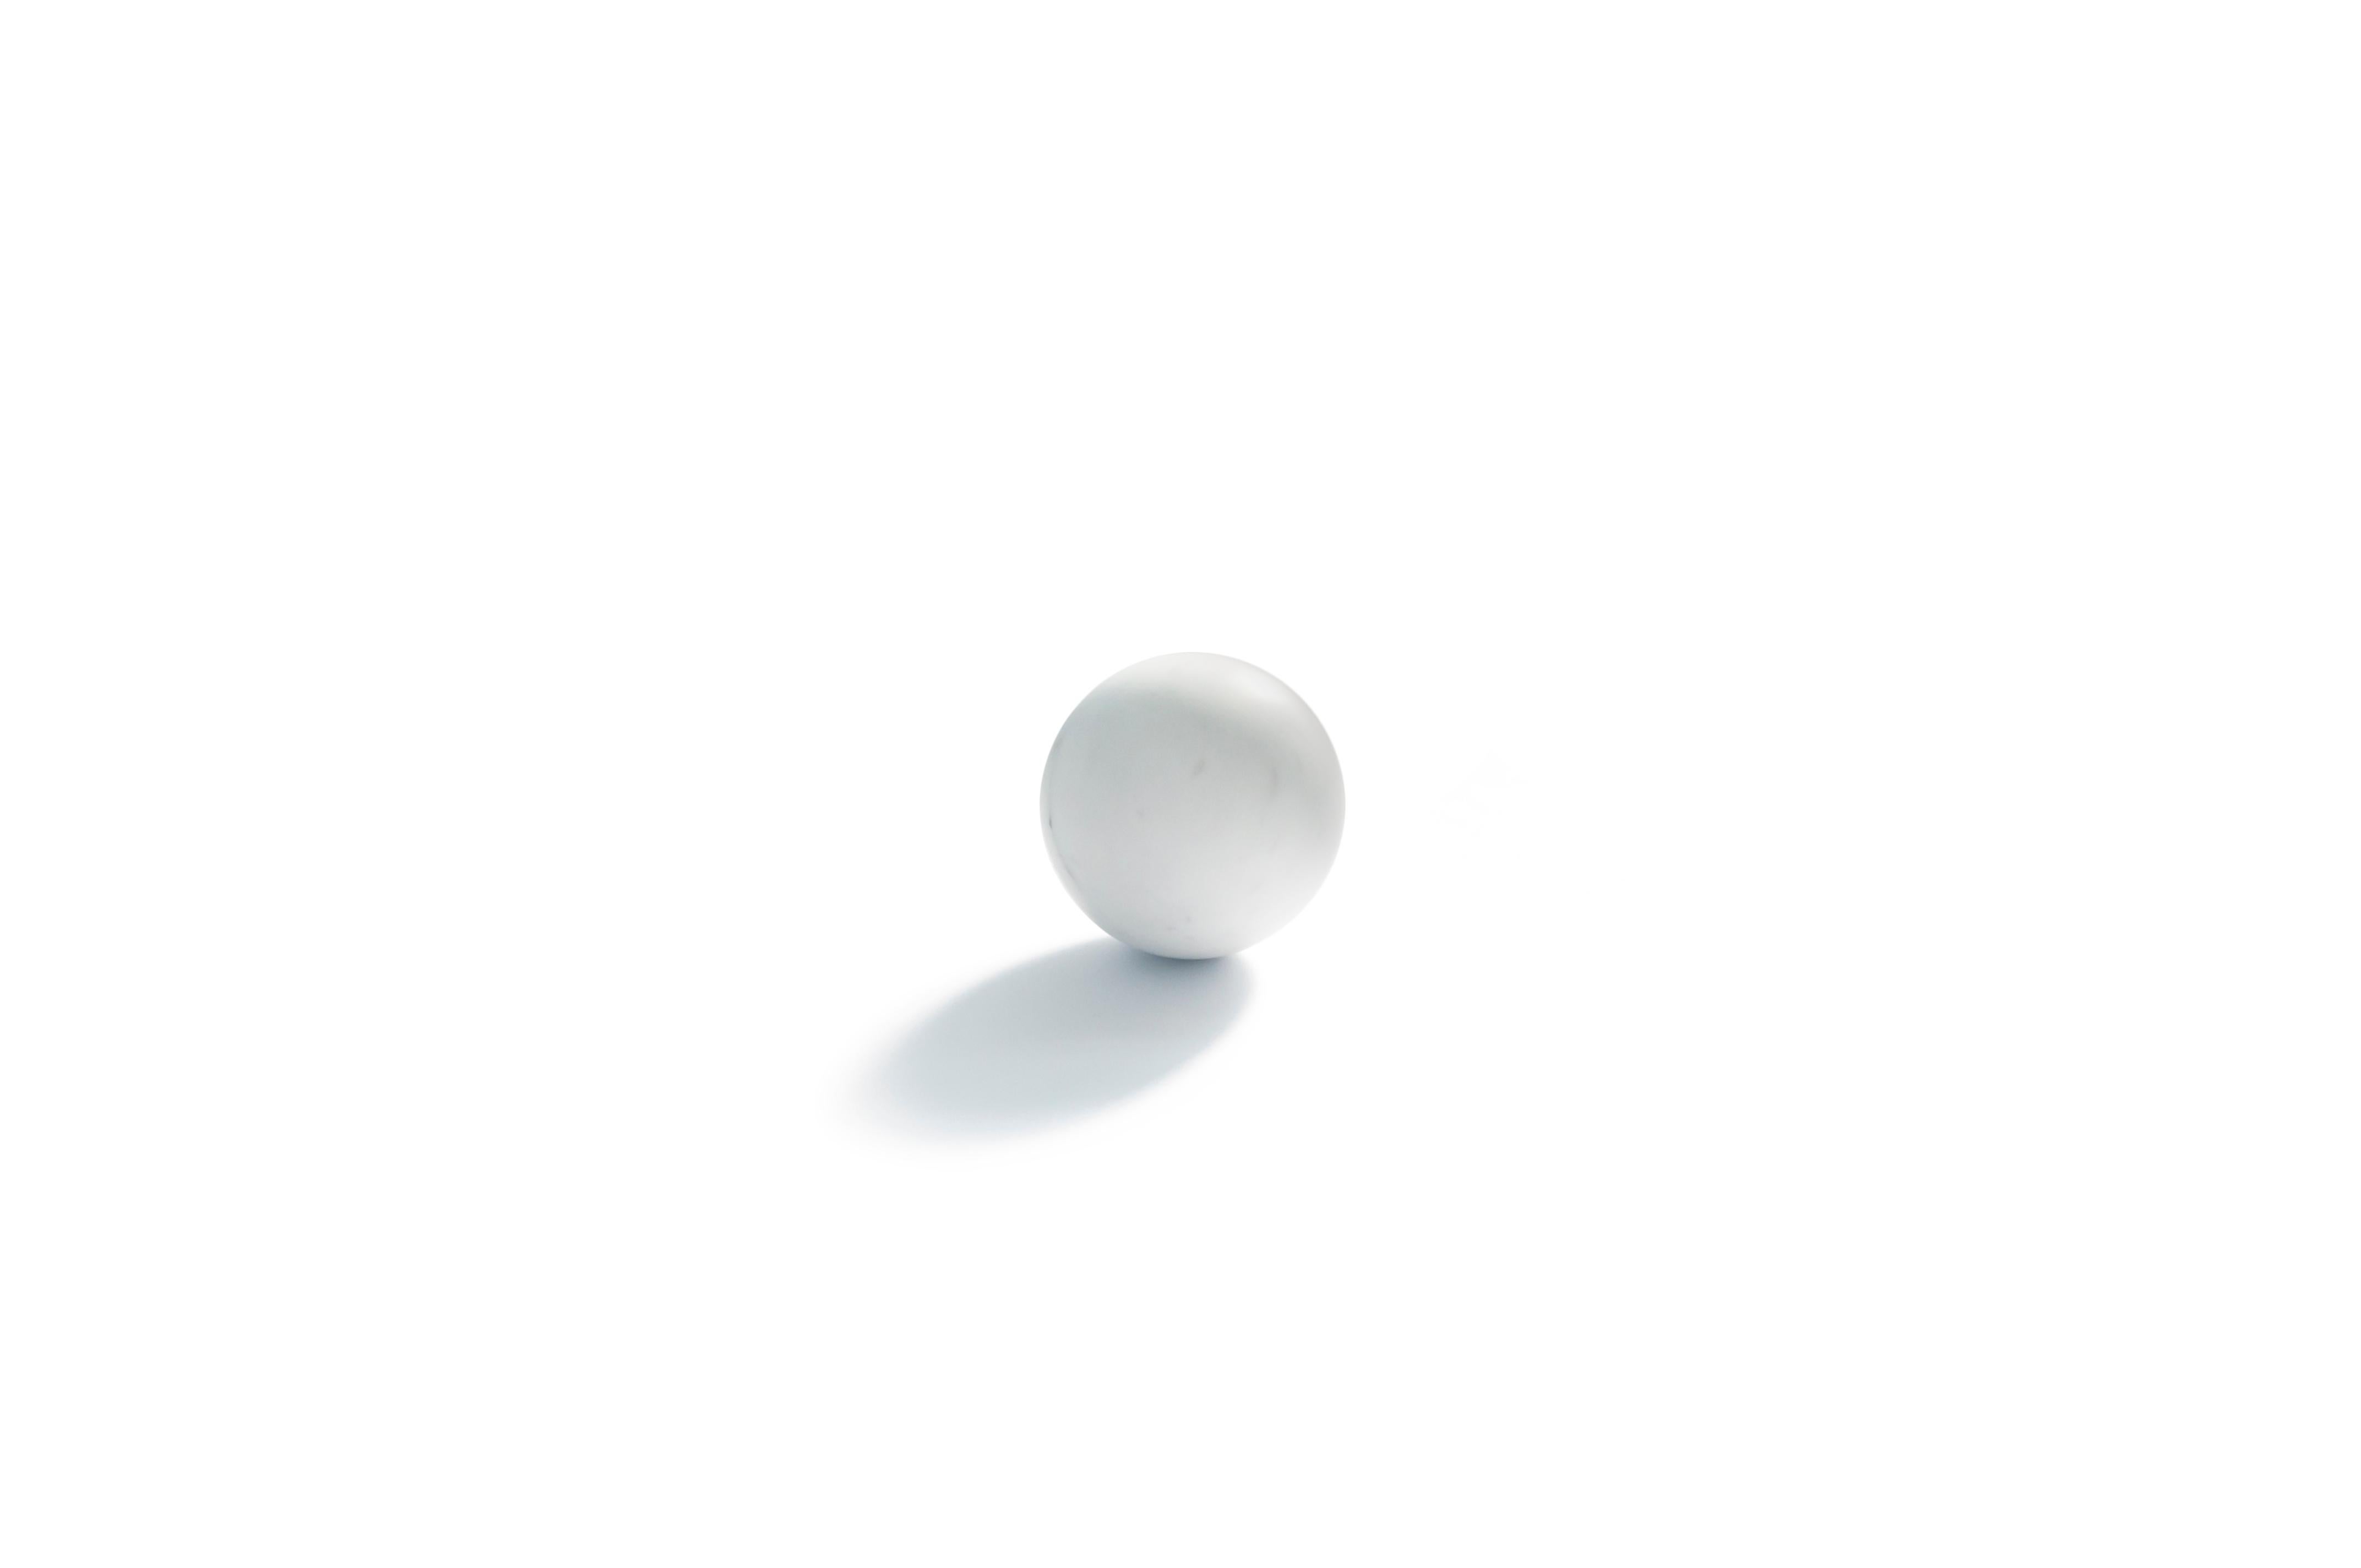 Briefbeschwerer mit Kugelform aus satiniertem weißem Carrara-Marmor. Maße: Durchmesser 10,5 cm

Jedes Stück ist in gewisser Weise einzigartig (da jeder Marmorblock unterschiedliche Maserungen und Schattierungen aufweist) und wird in Italien